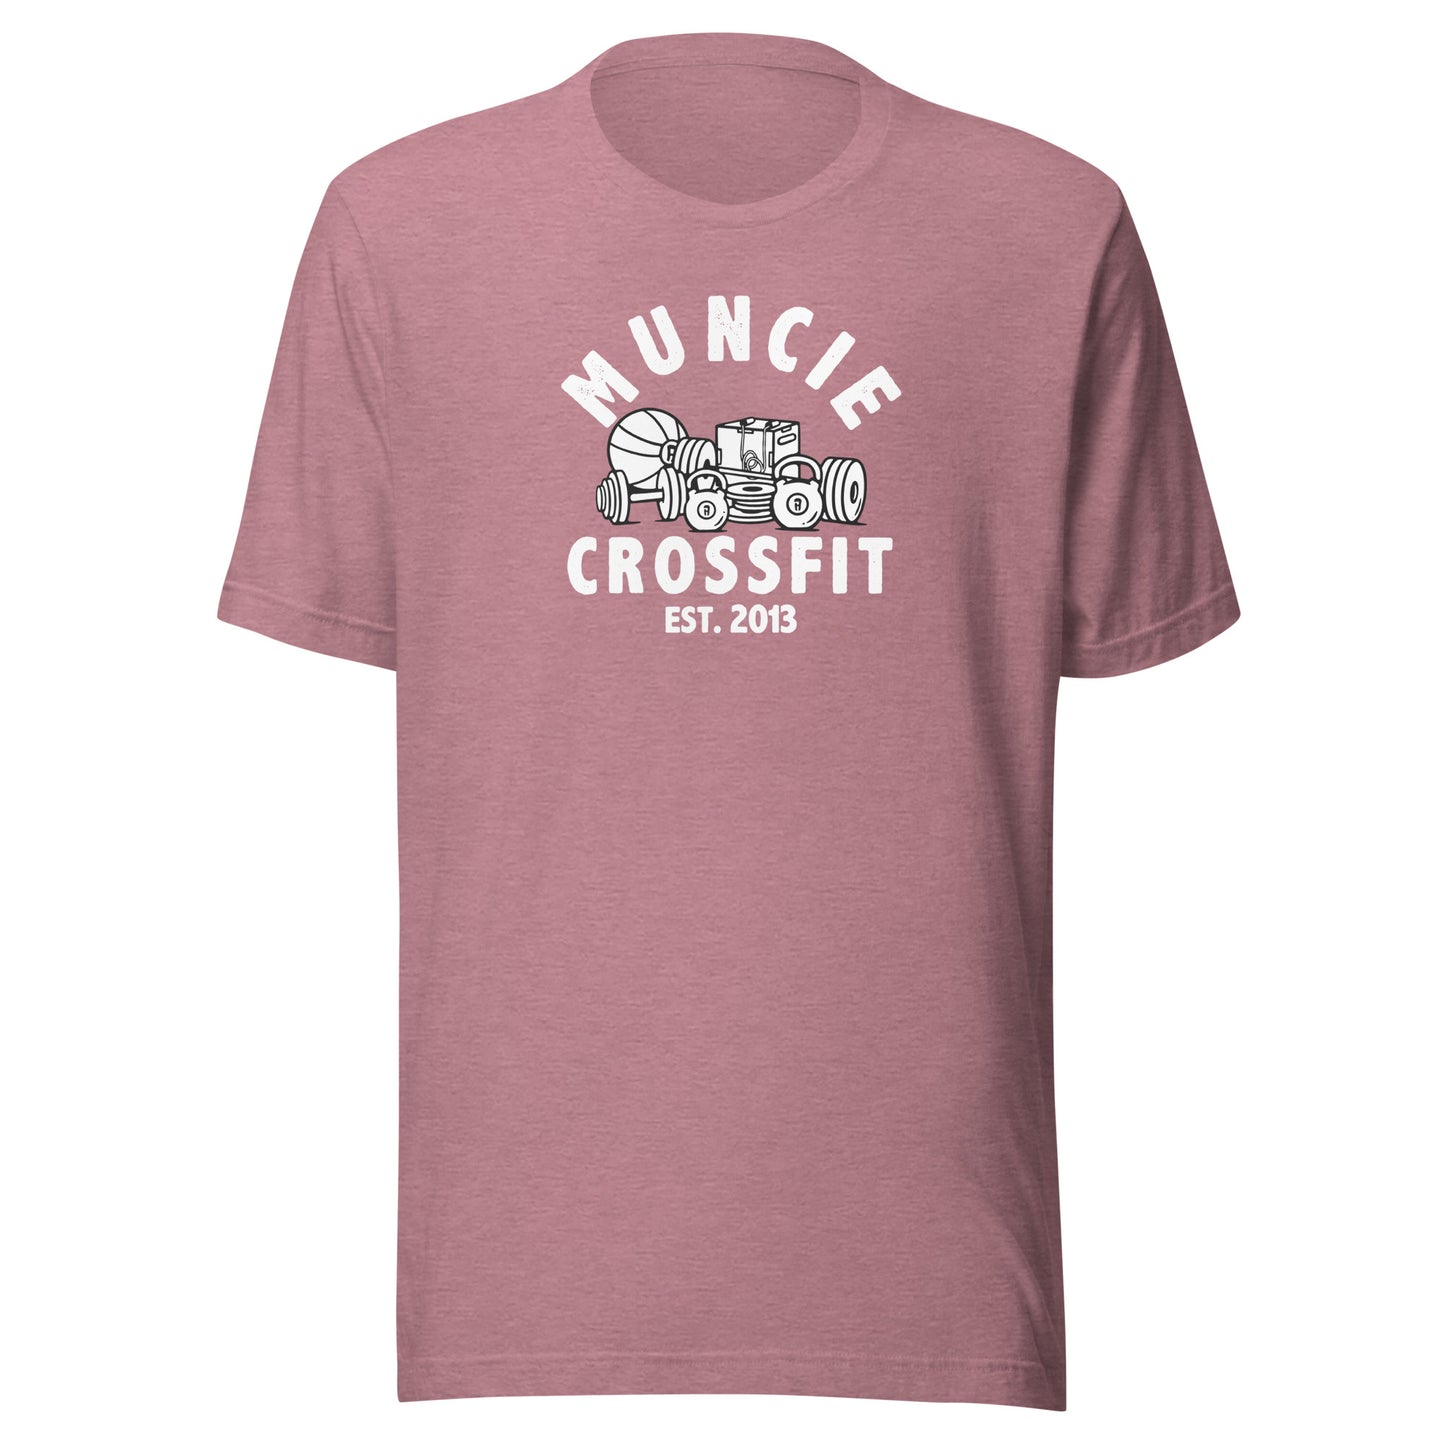 Muncie CrossFit Tee White Logo